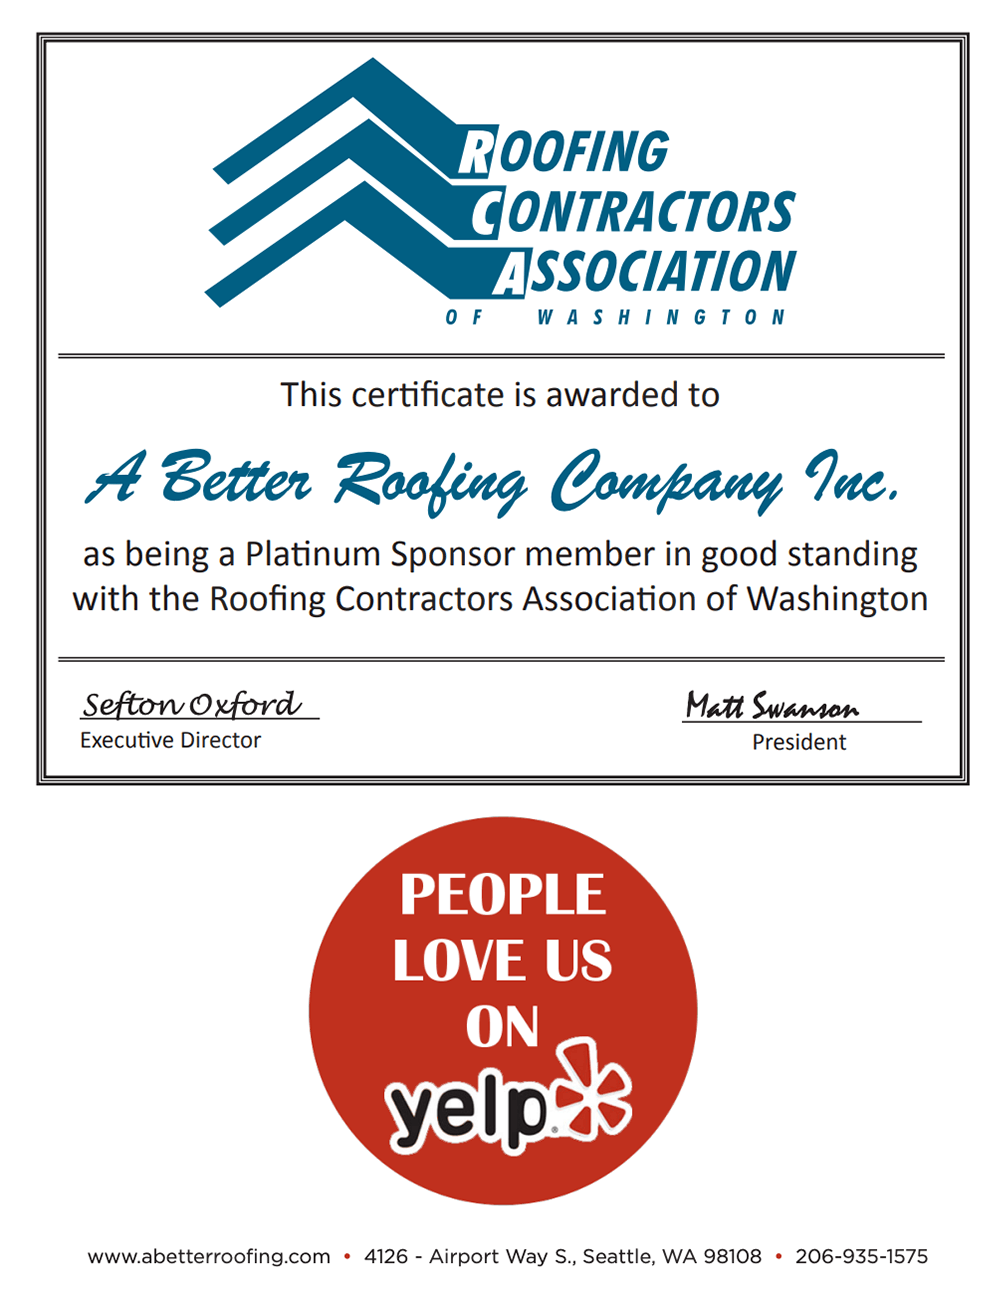 Roofing Contractors Association Certificate